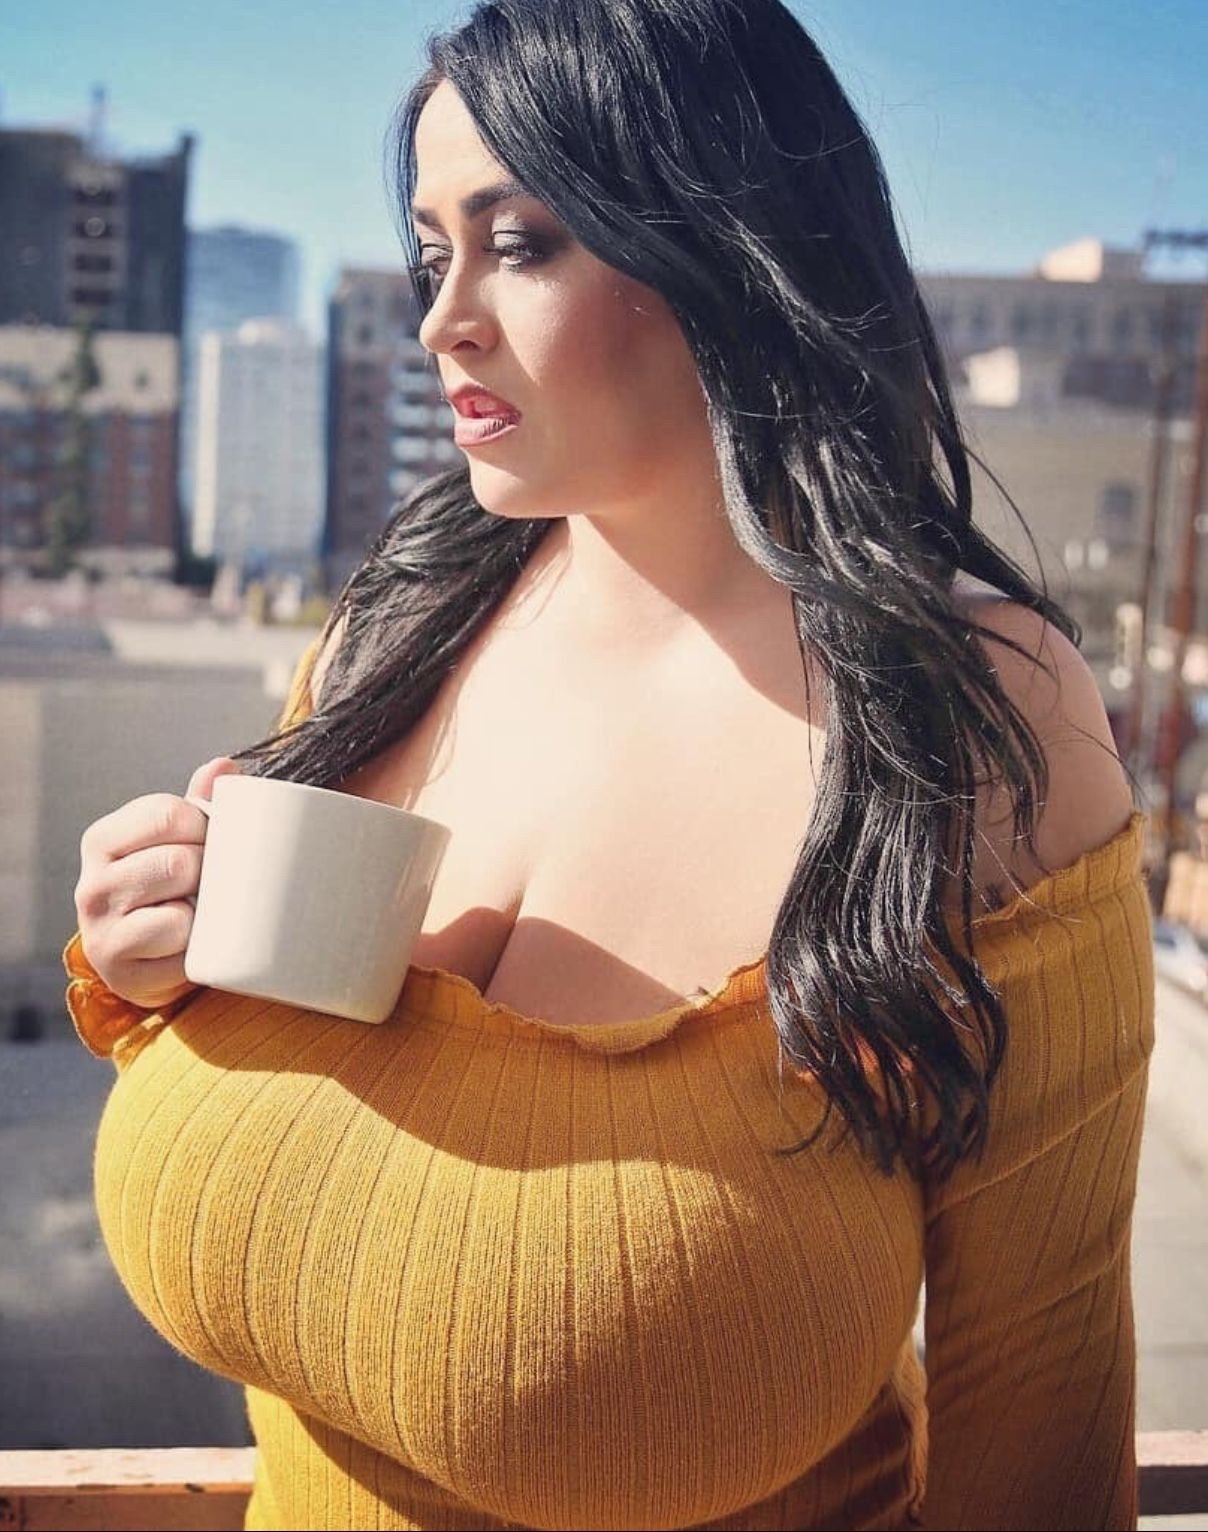 Большие груди больших женщин фото